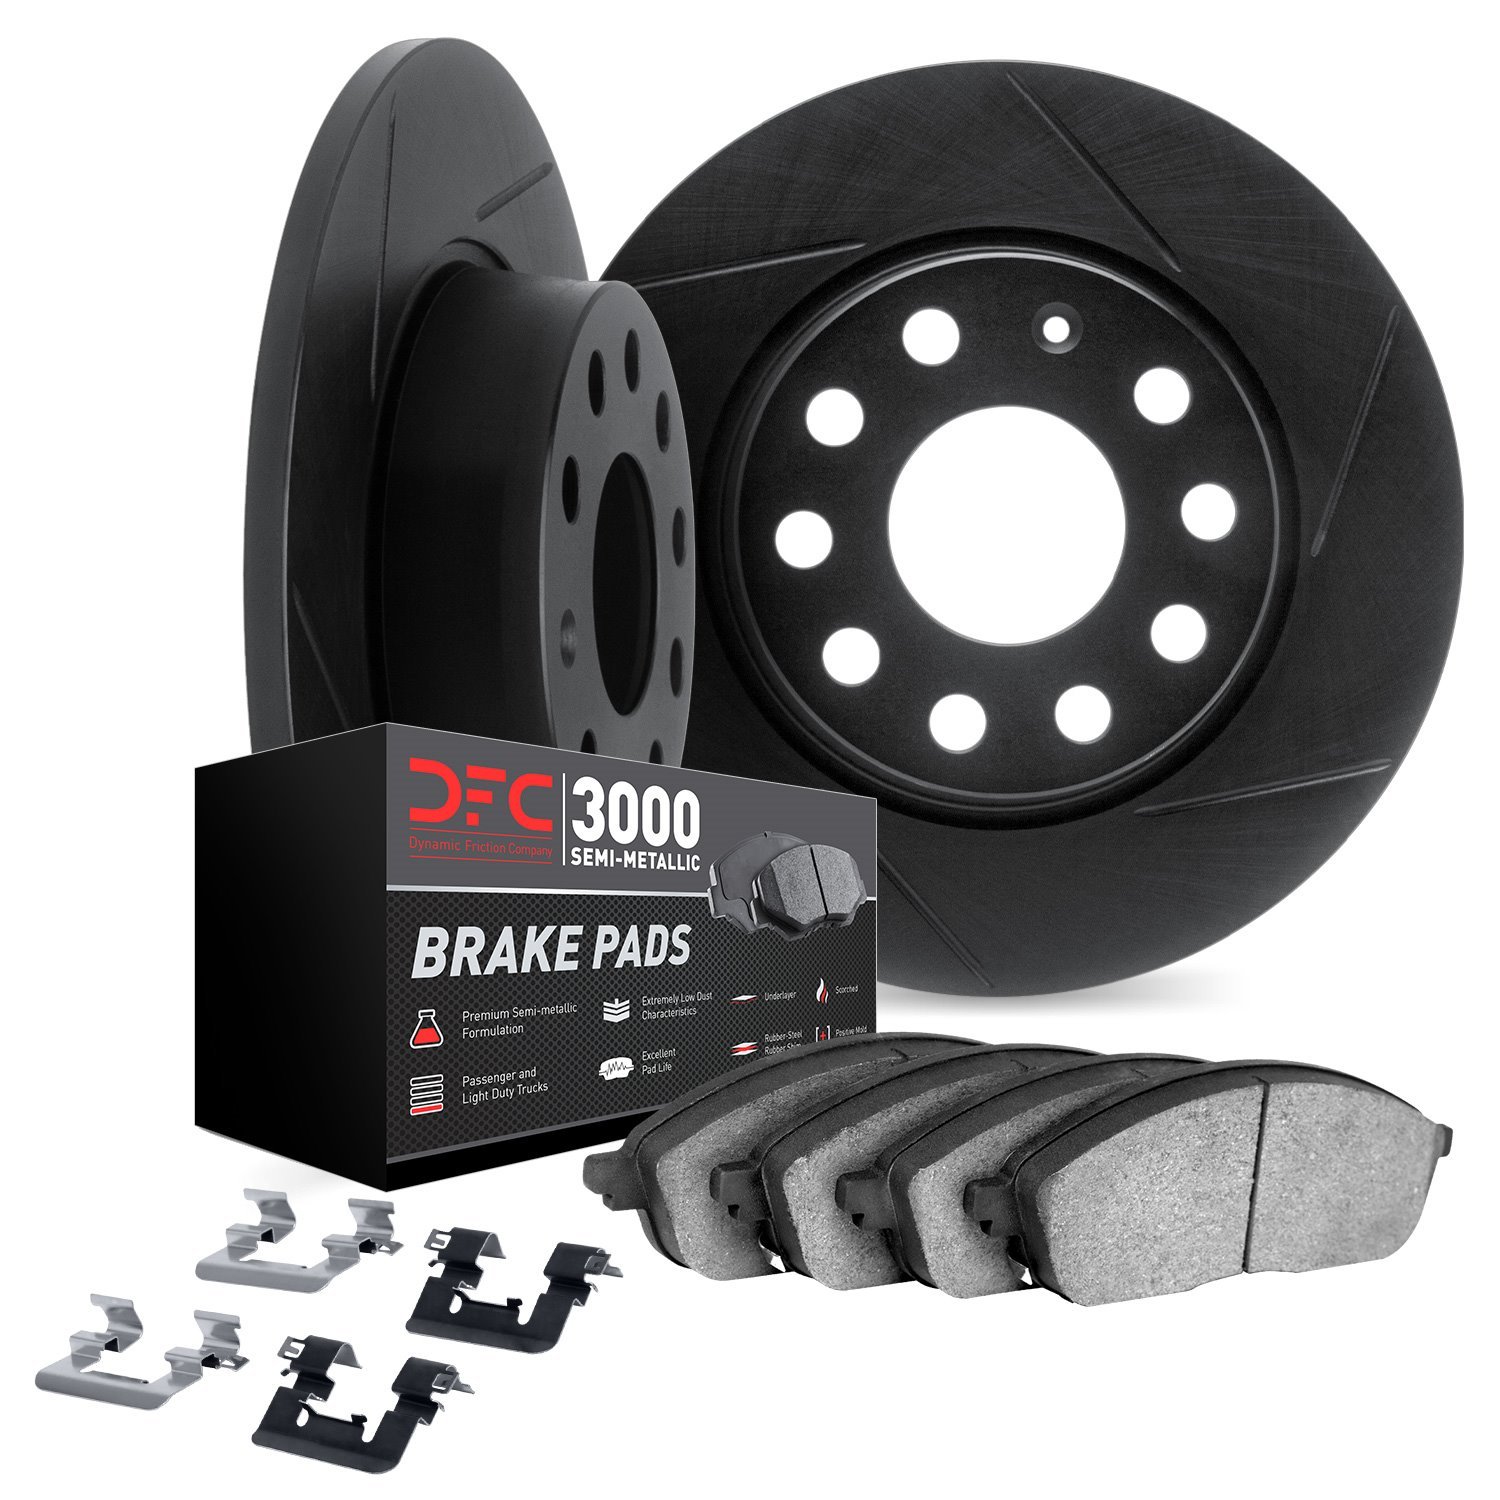 3112-63131 Slotted Brake Rotors with 3000-Series Semi-Metallic Brake Pads Kit & Hardware [Black], 2012-2018 Mercedes-Benz, Posit